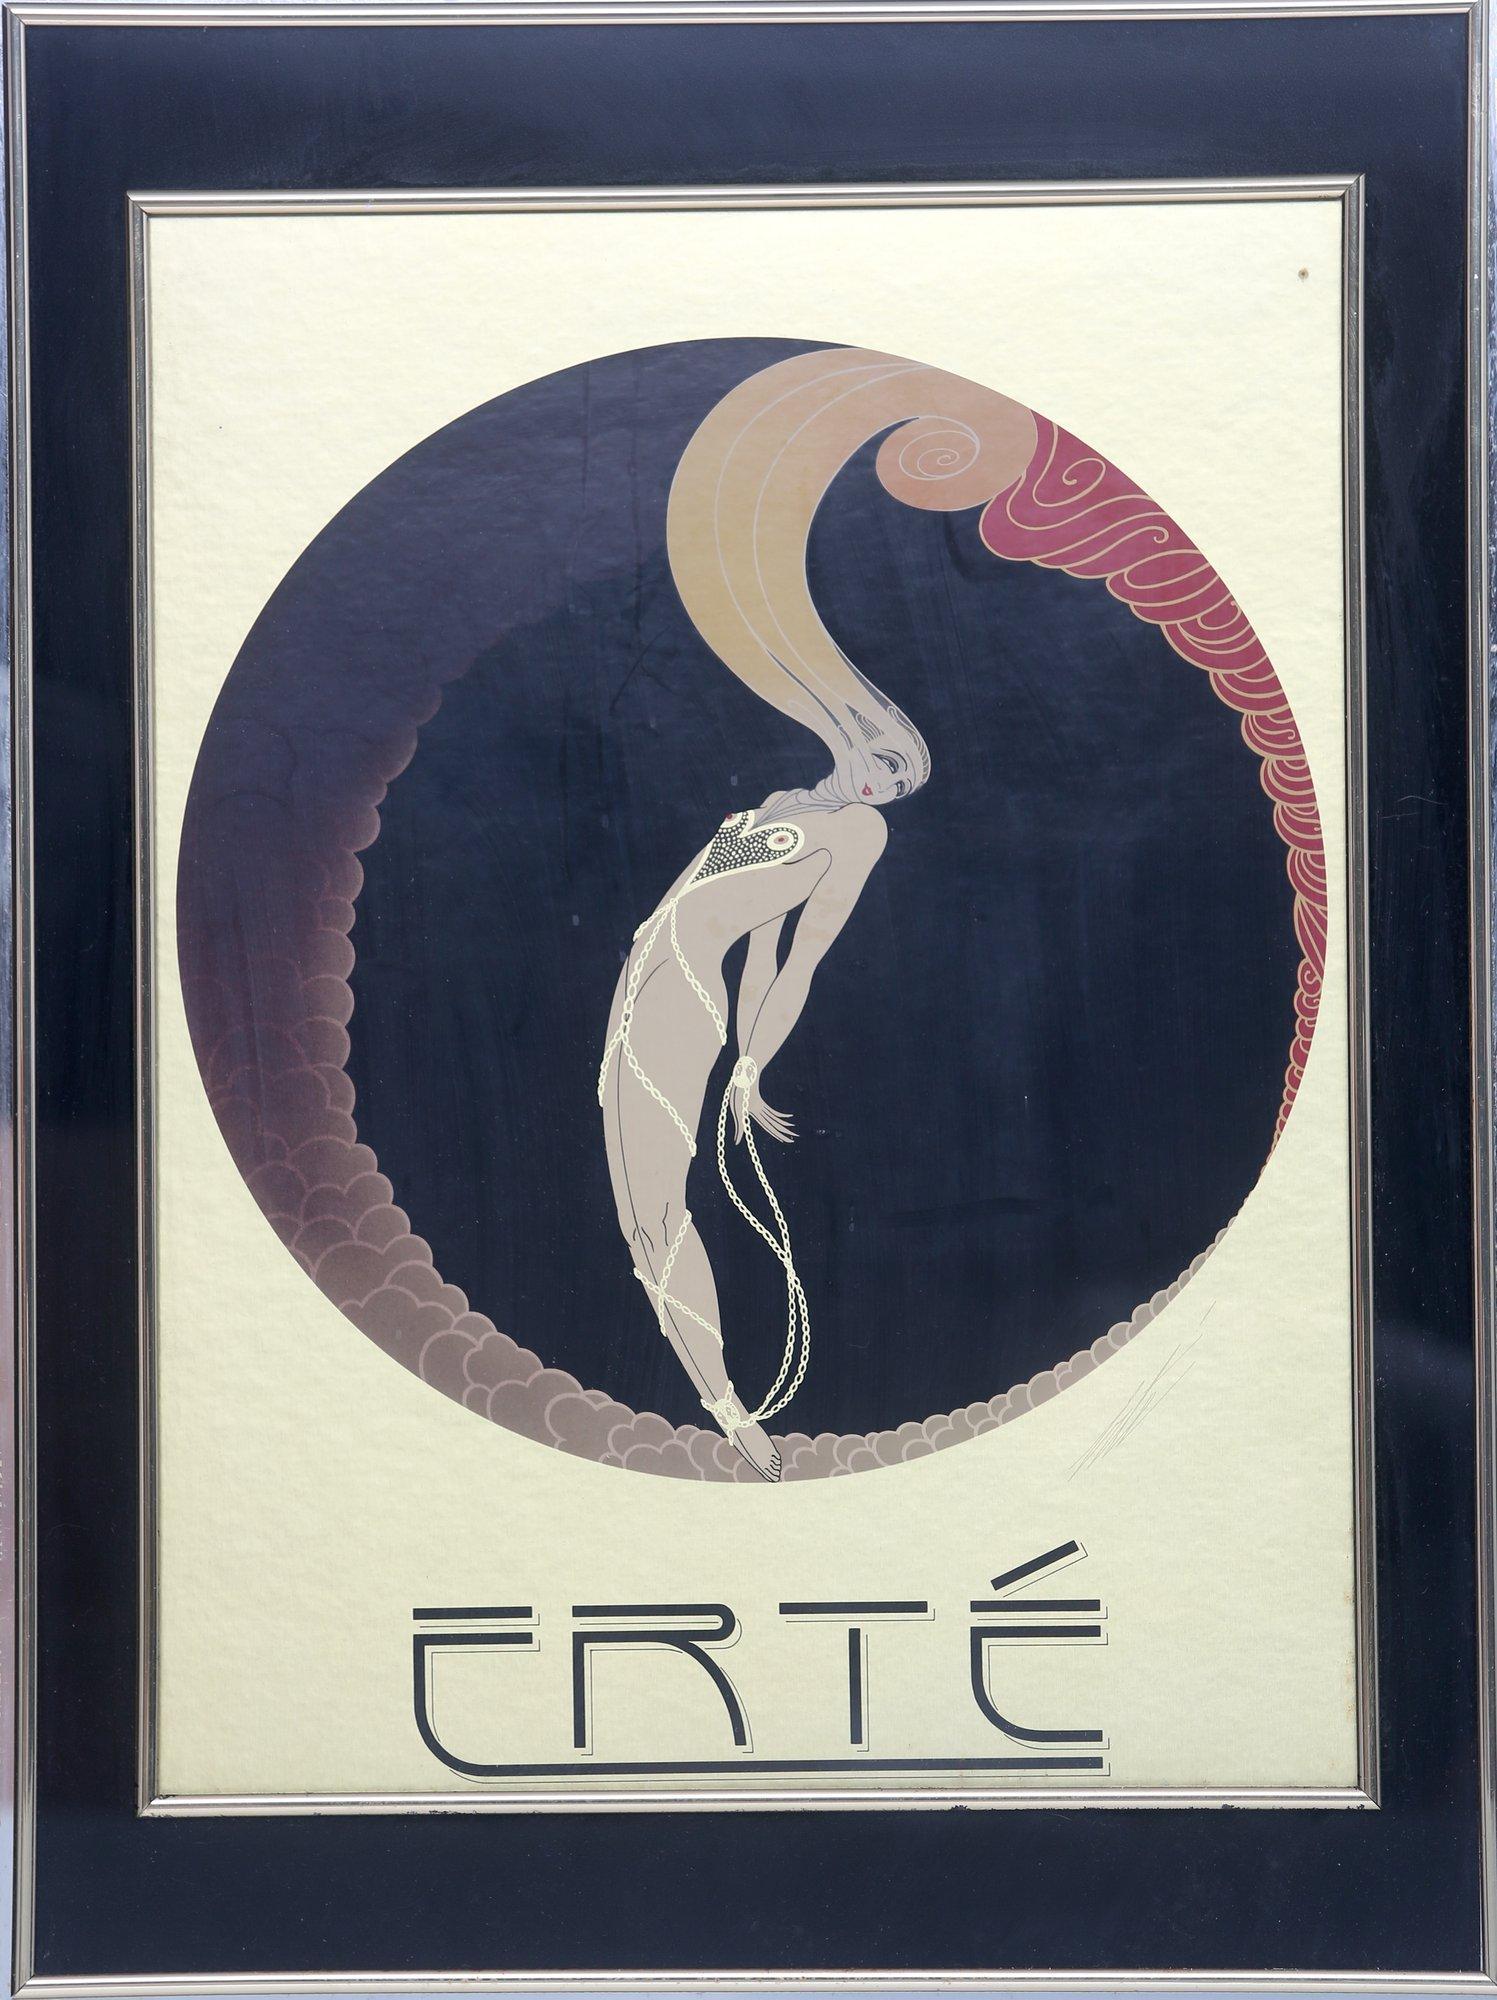 Erté—A Pseudonym for Romain de Tirtoff